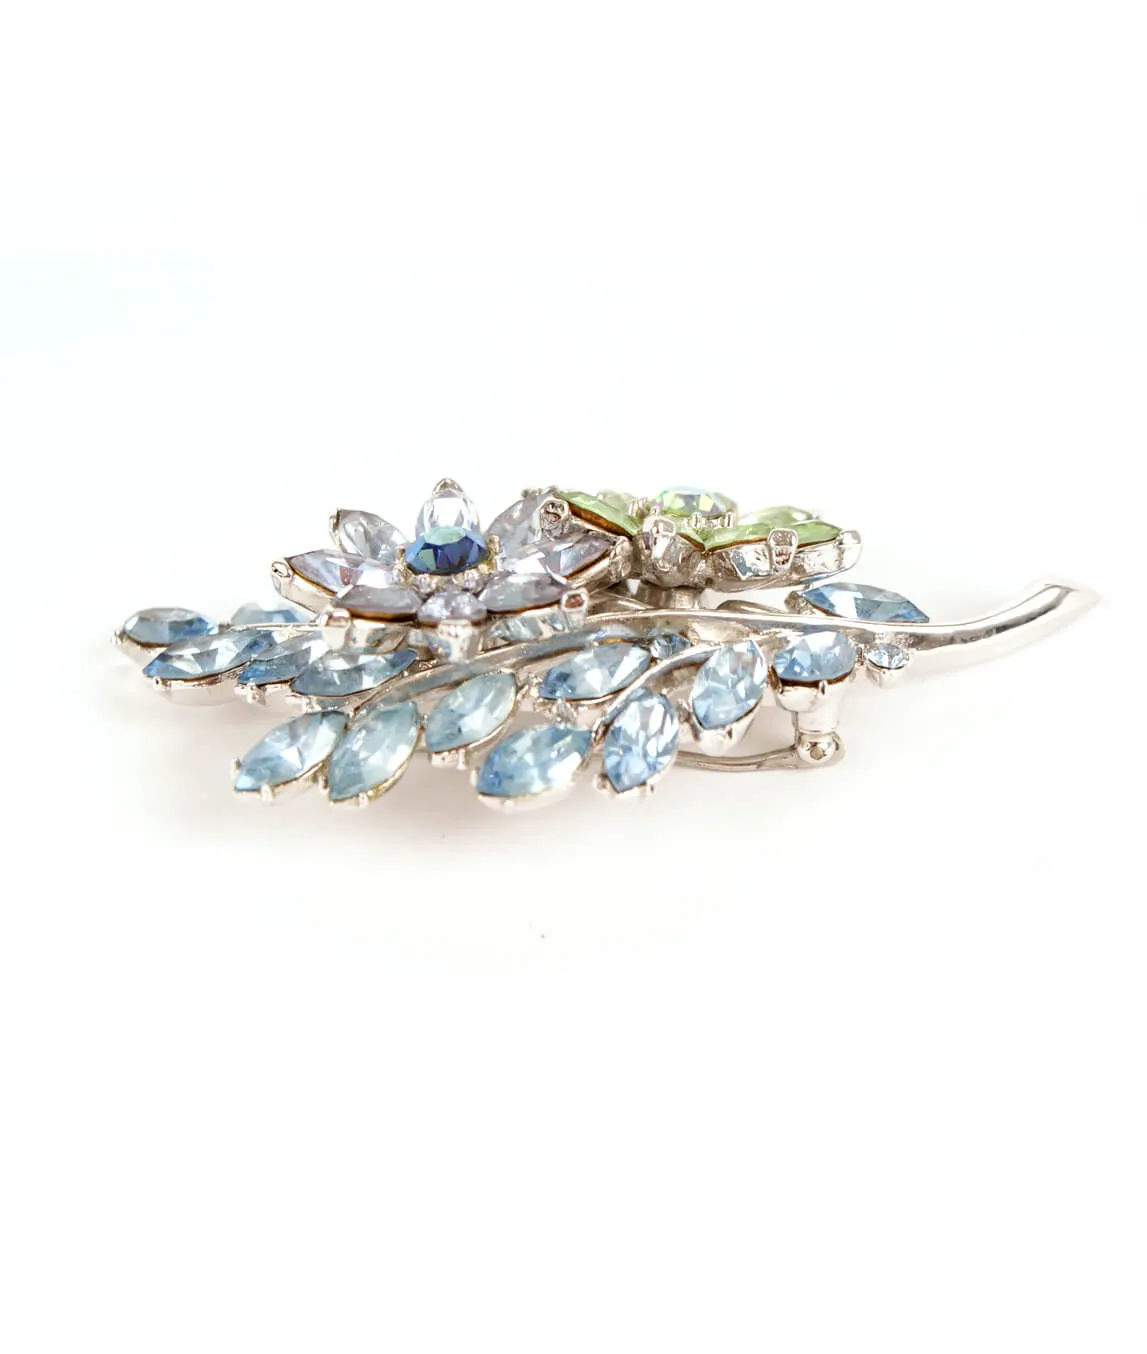 Blue crystal brooch by Trifari